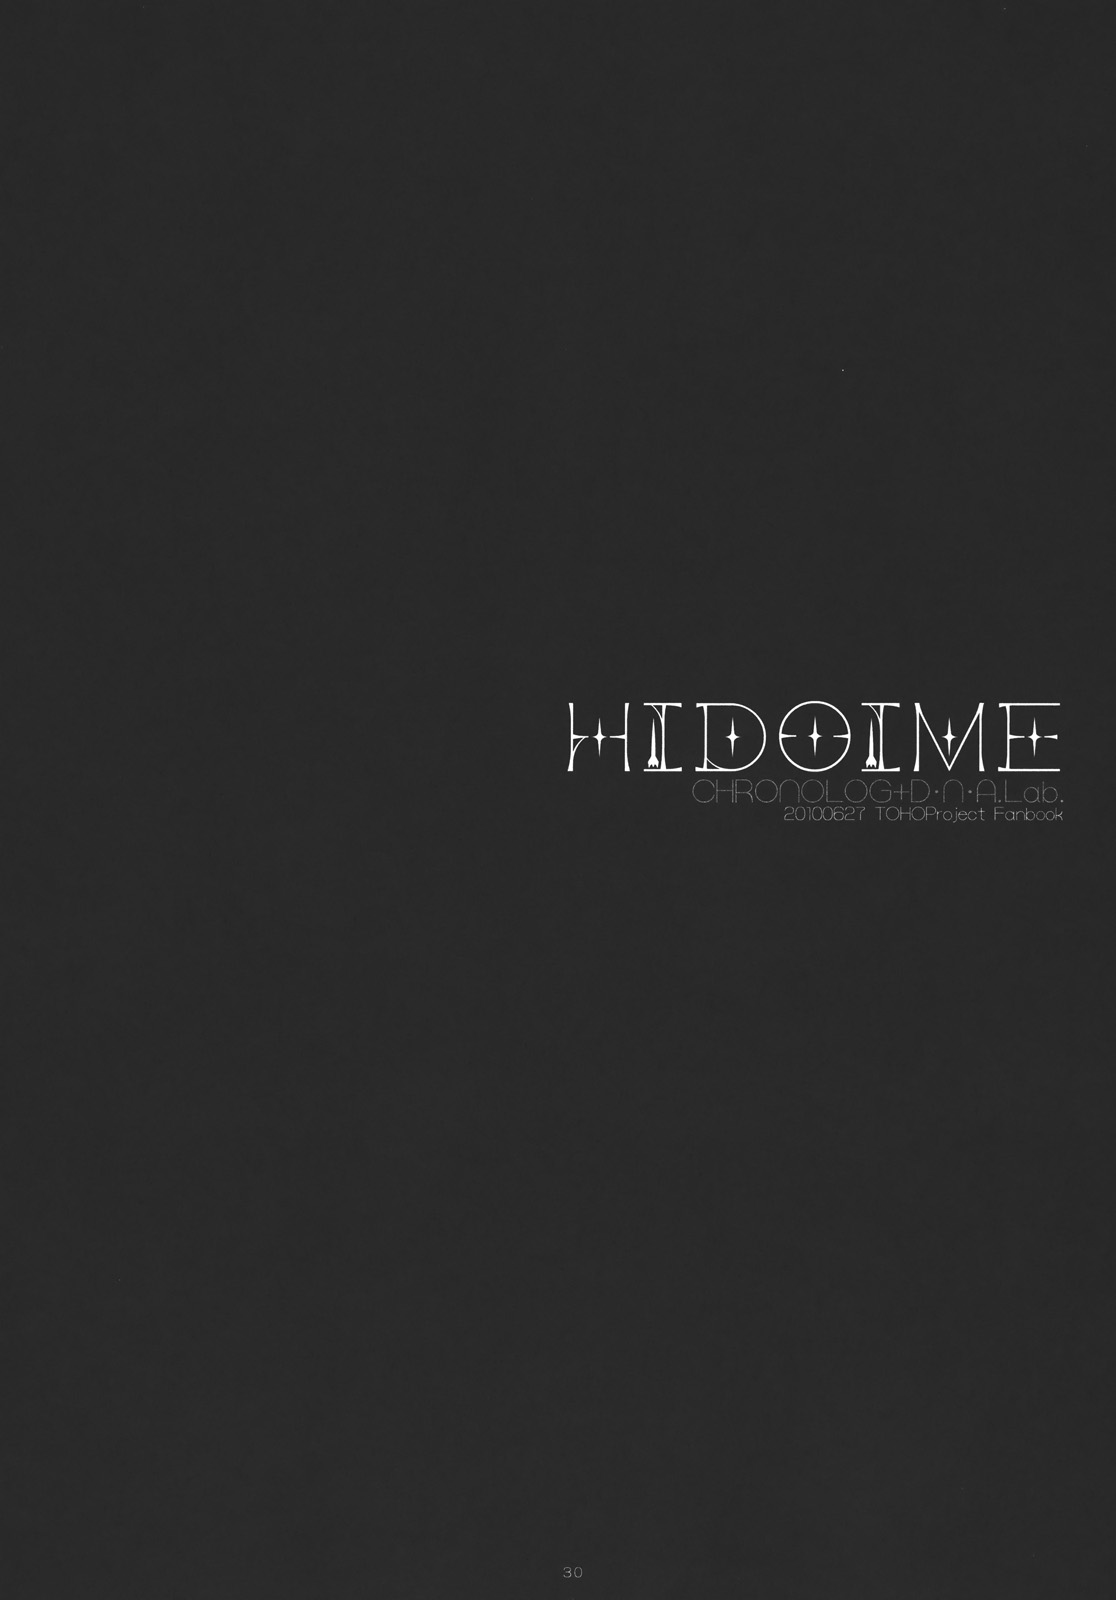 (サンクリ48) [CHRONOLOG、D・N・A.Lab. (桜沢いづみ、ミヤスリサ)] HIDOIME (東方Project)